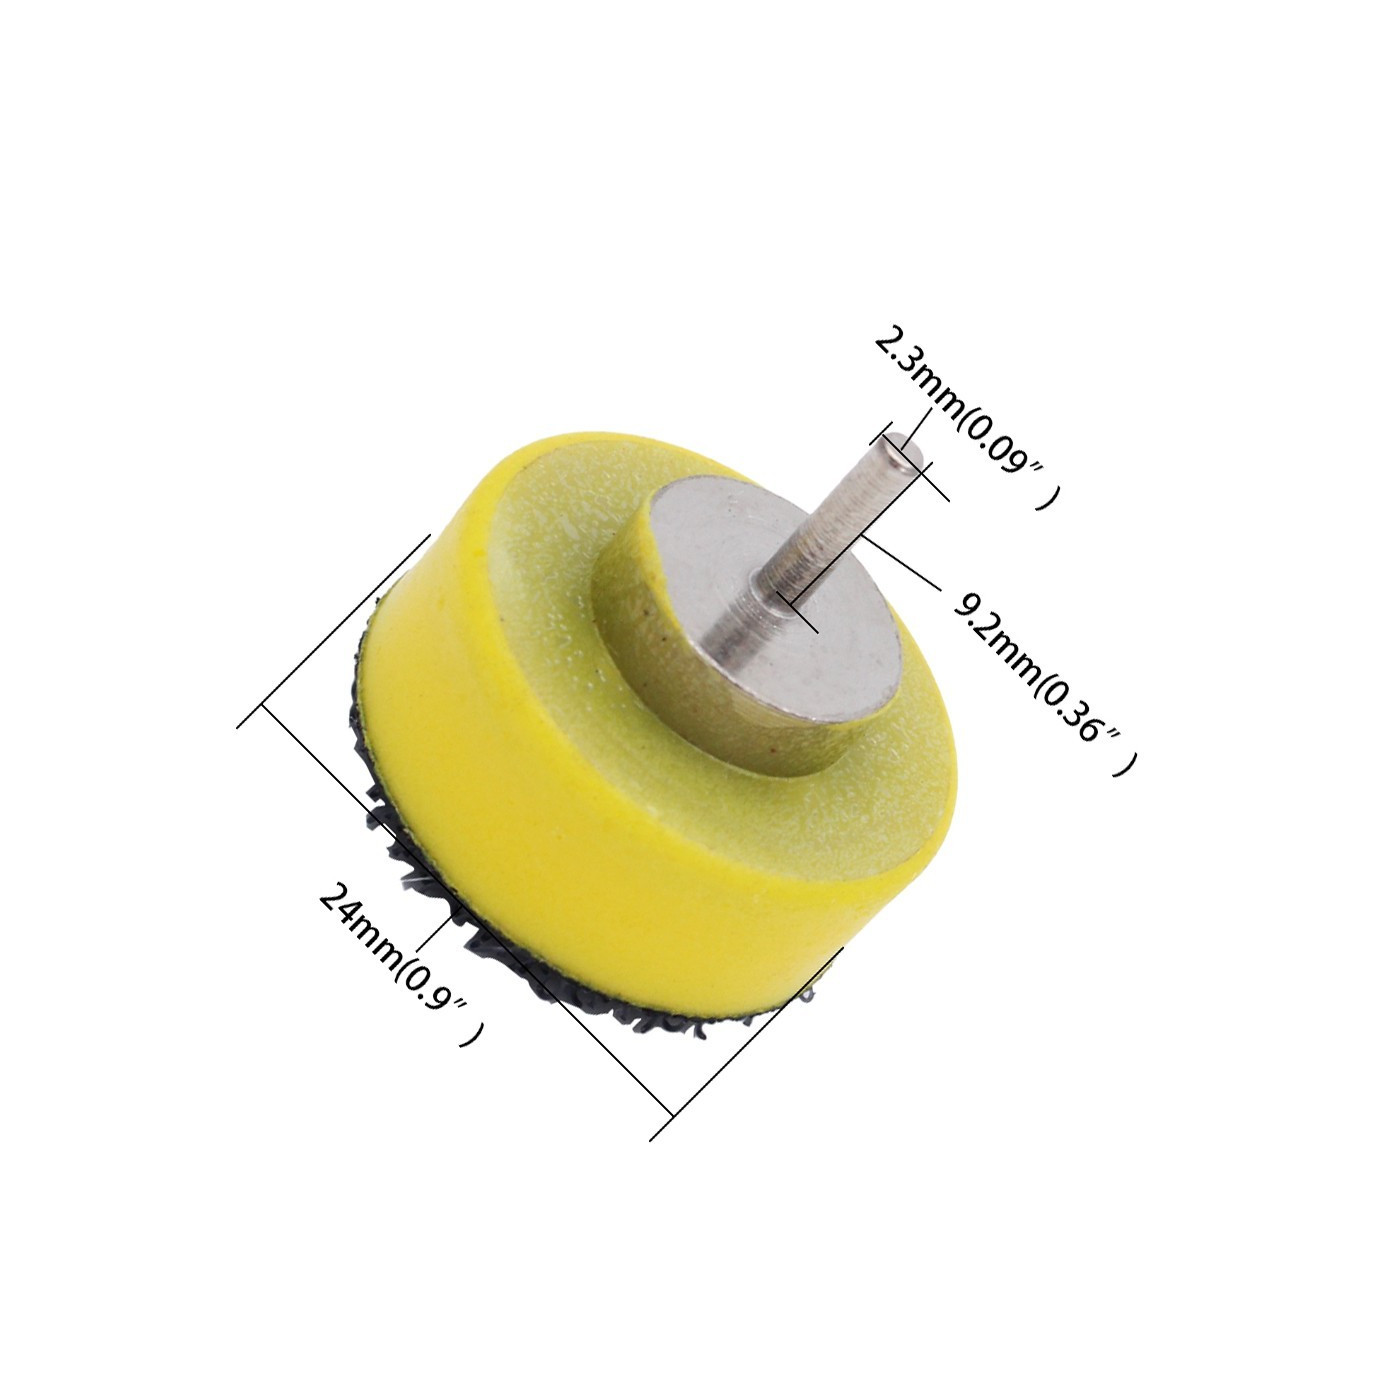 25 mm breiter Schleifscheibenhalter (Klettverschluss)